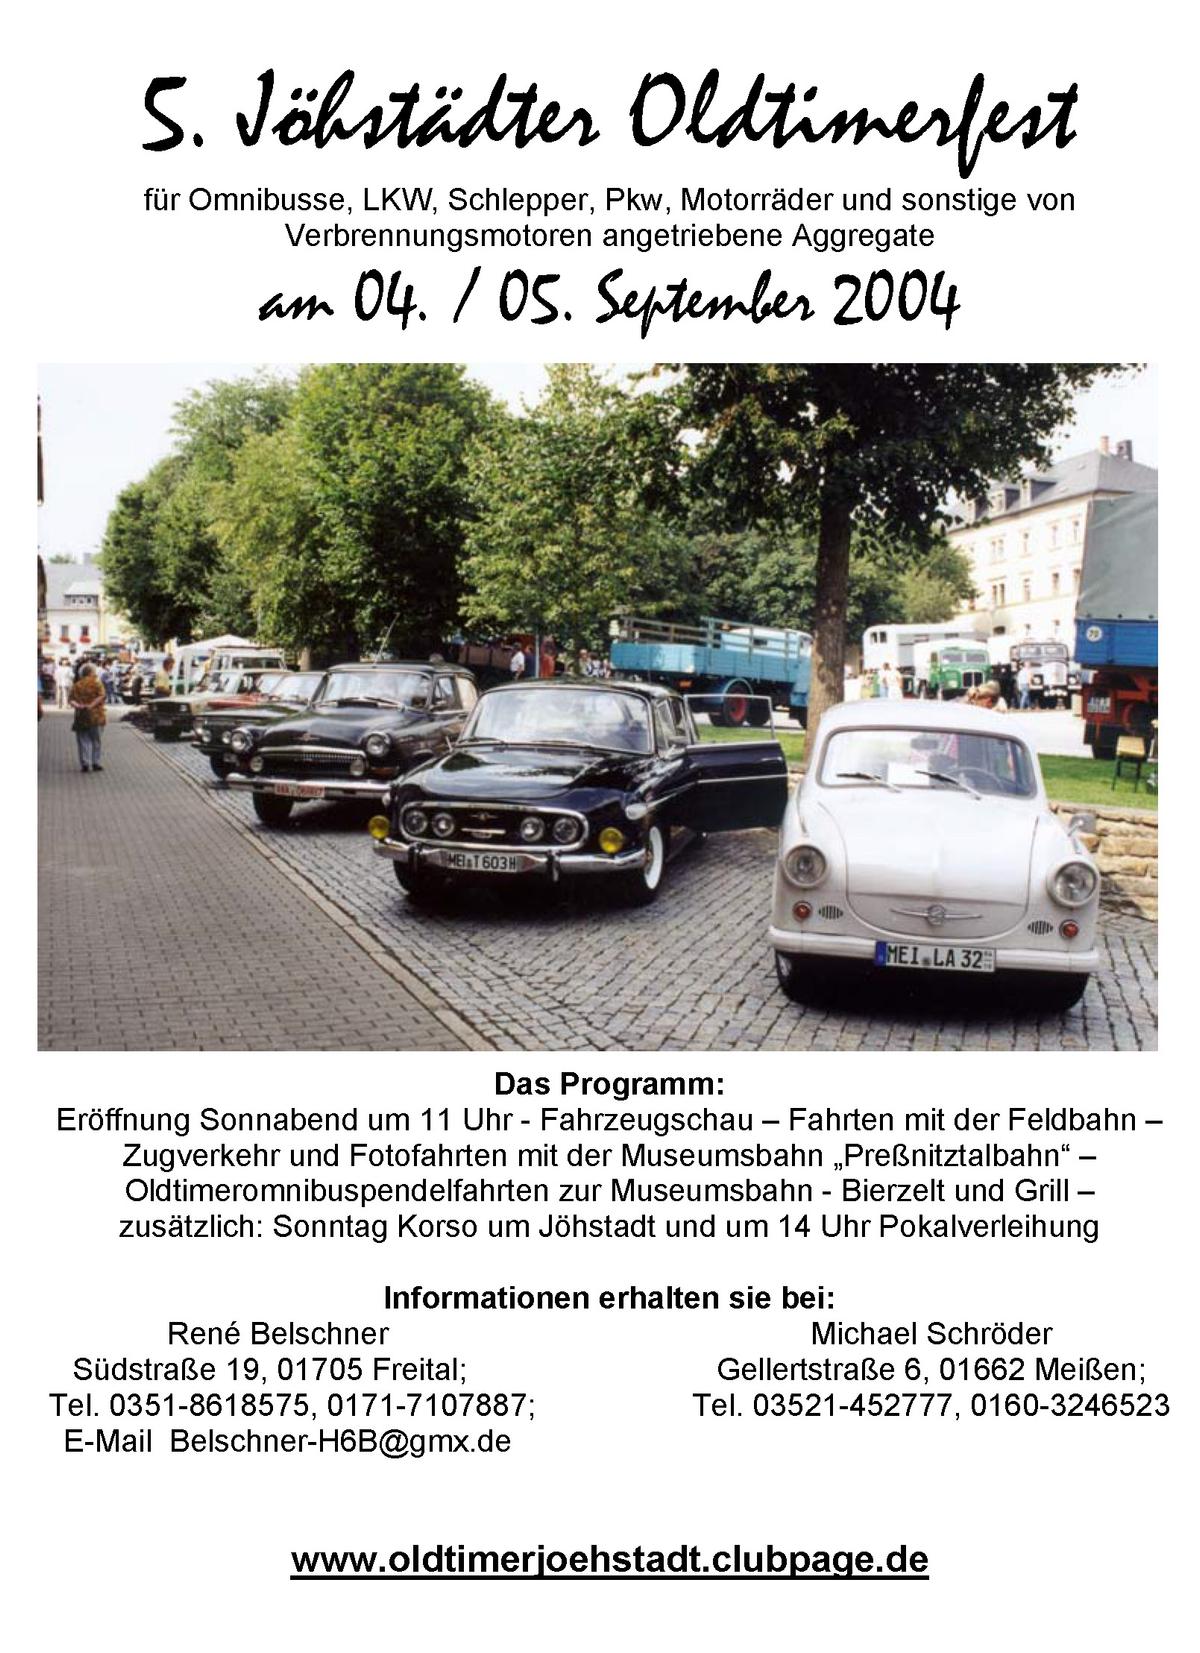 Vorankündigung: 5. Jöhstädter Oldtimerfest am 4. & 5. September 2004